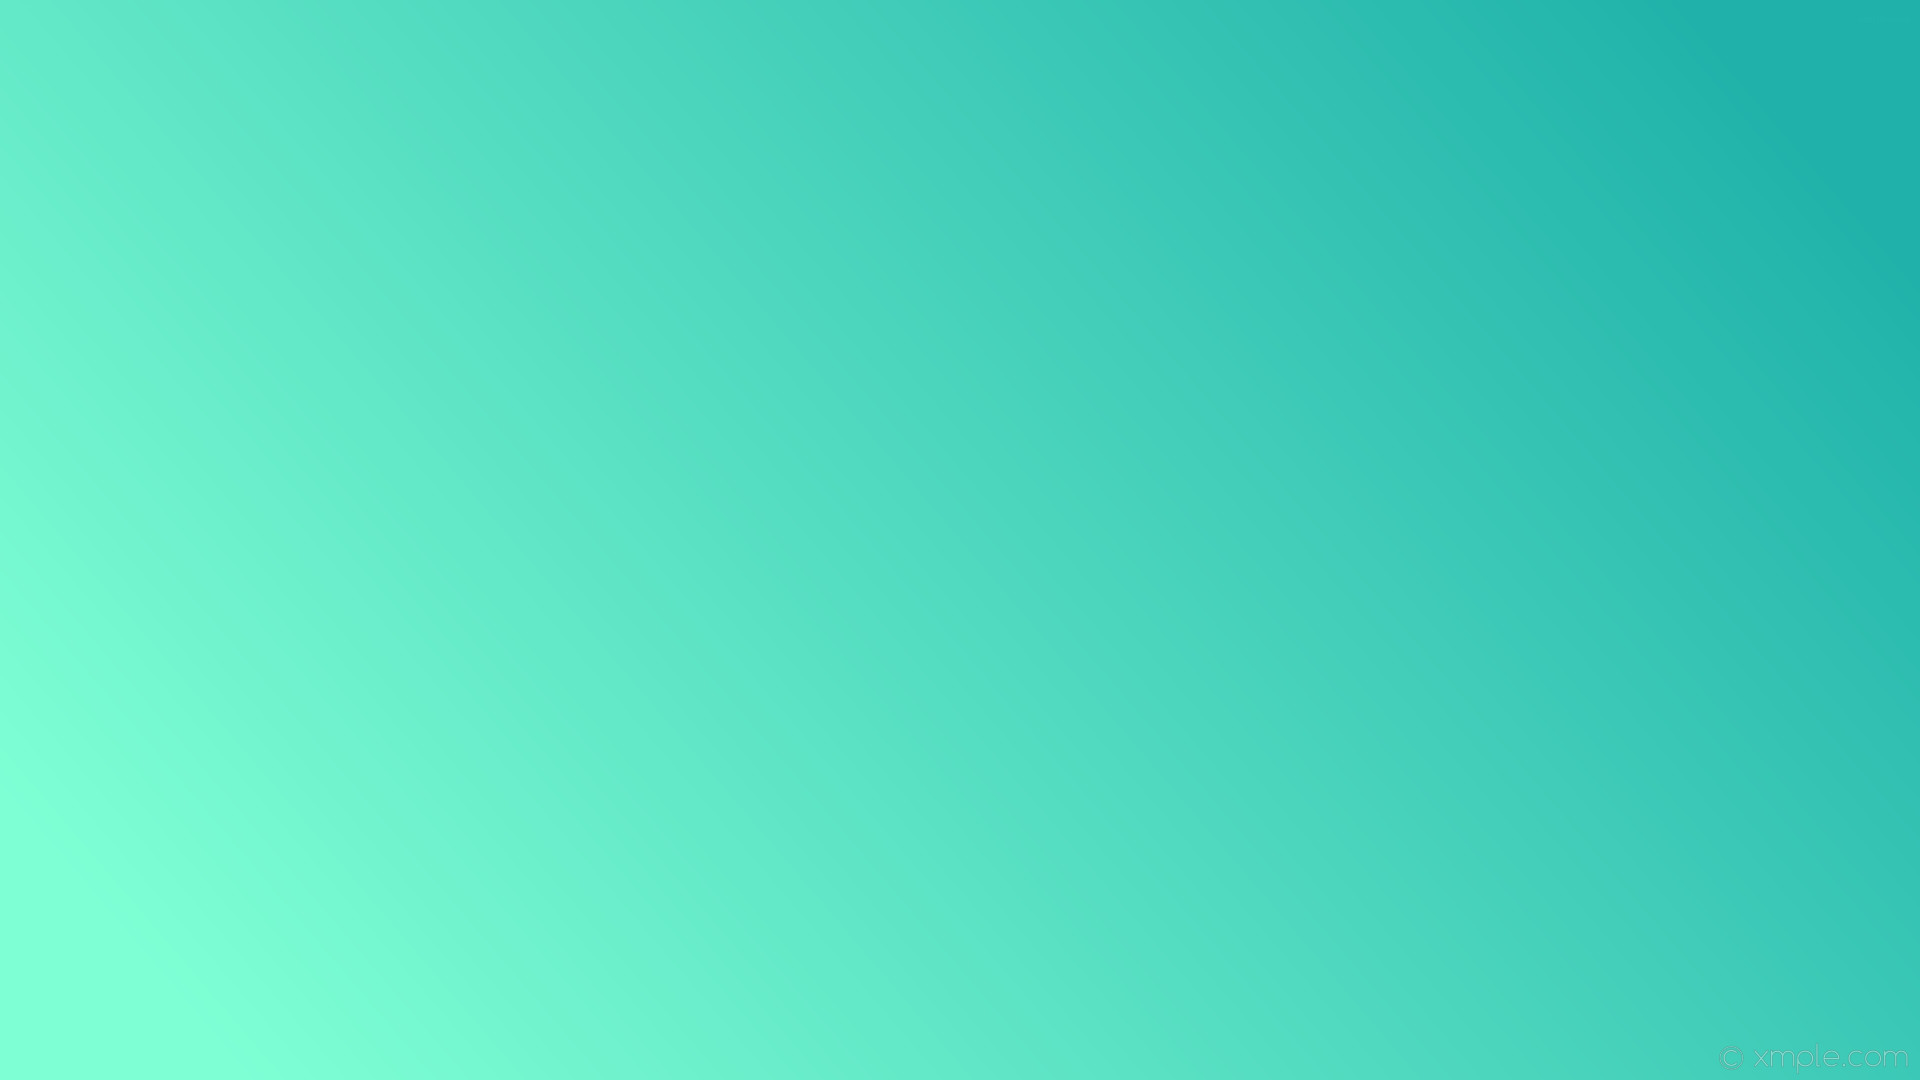 1920x1080 wallpaper linear green gradient blue light sea green aquamarine #20b2aa  #7fffd4 15Â°